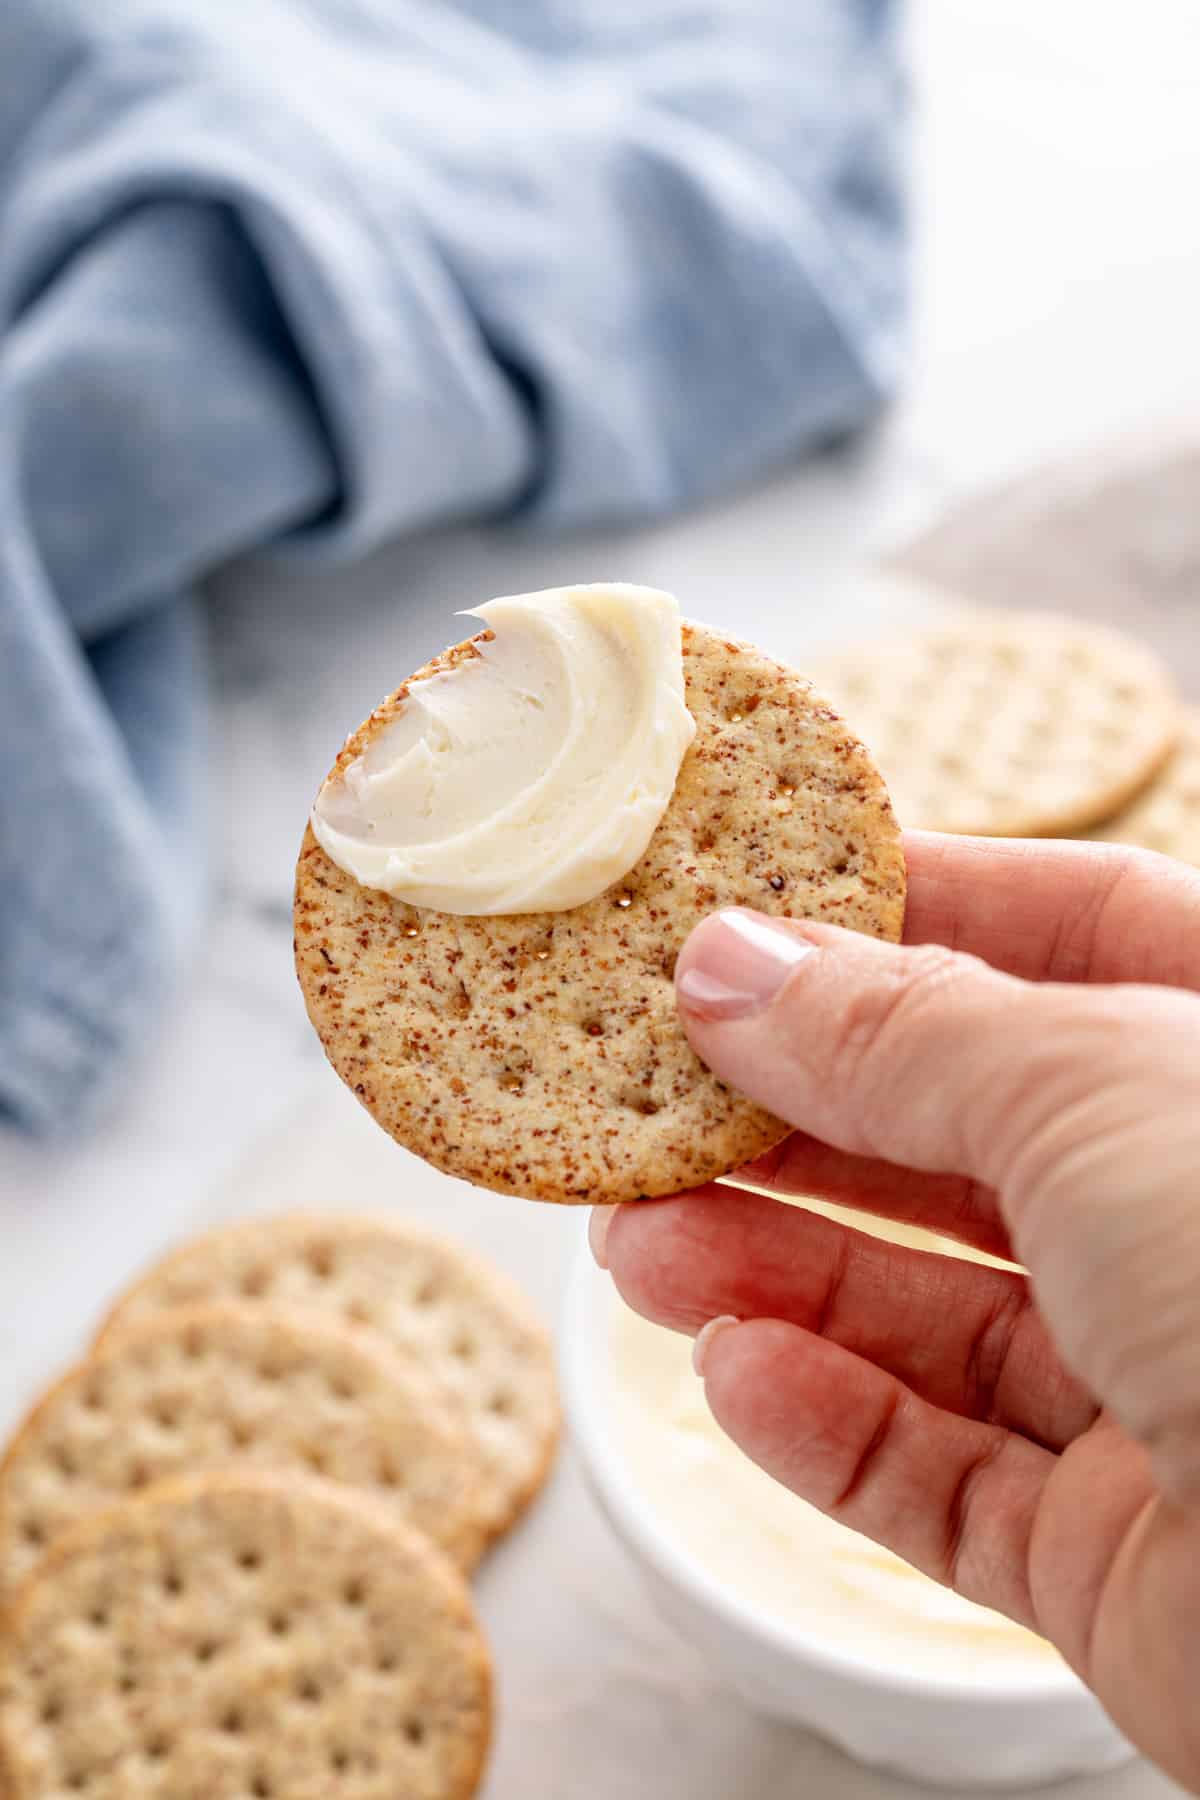 Homemade butter spread on a cracker.